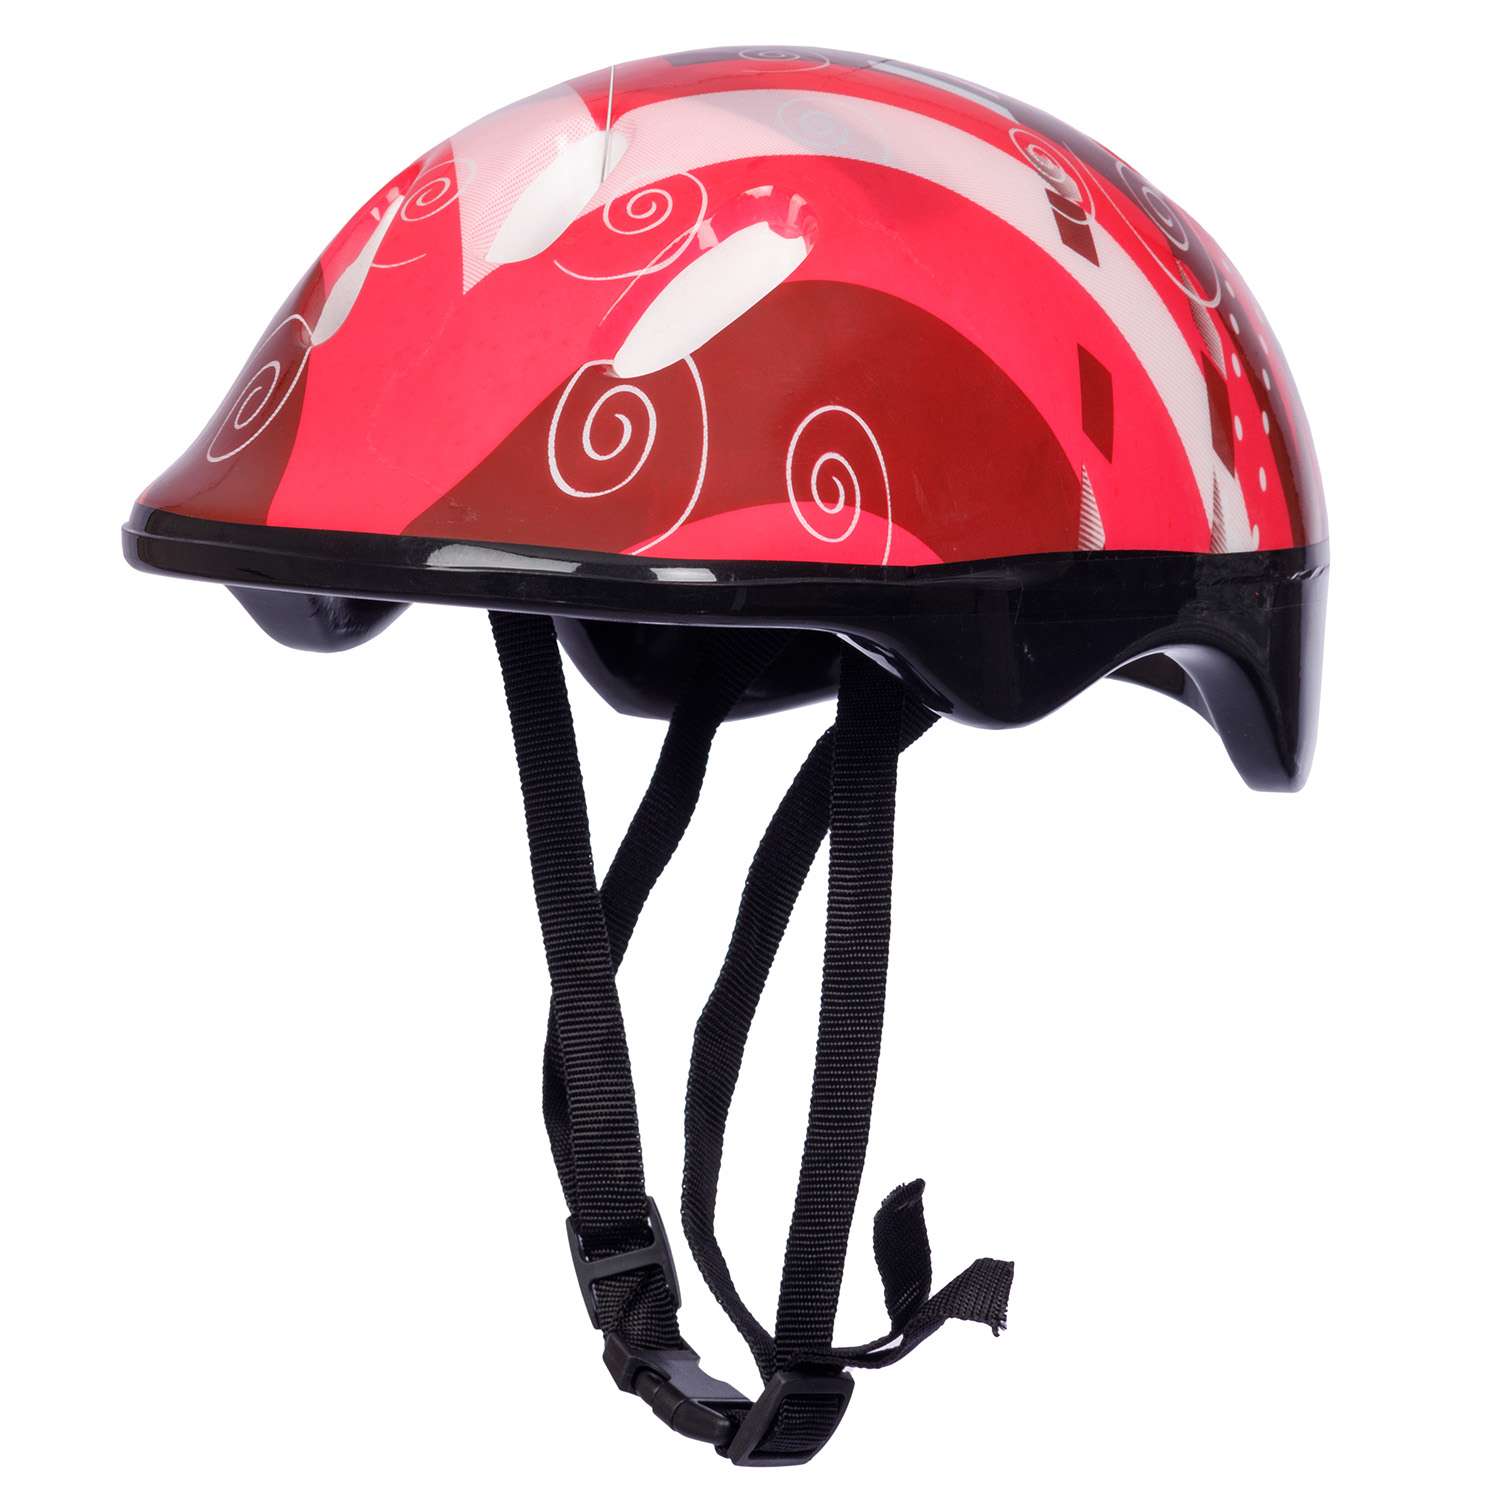 Роликовые коньки BABY STYLE раздвижный 27-30 S шлем и защита светящиеся колеса красный - фото 7